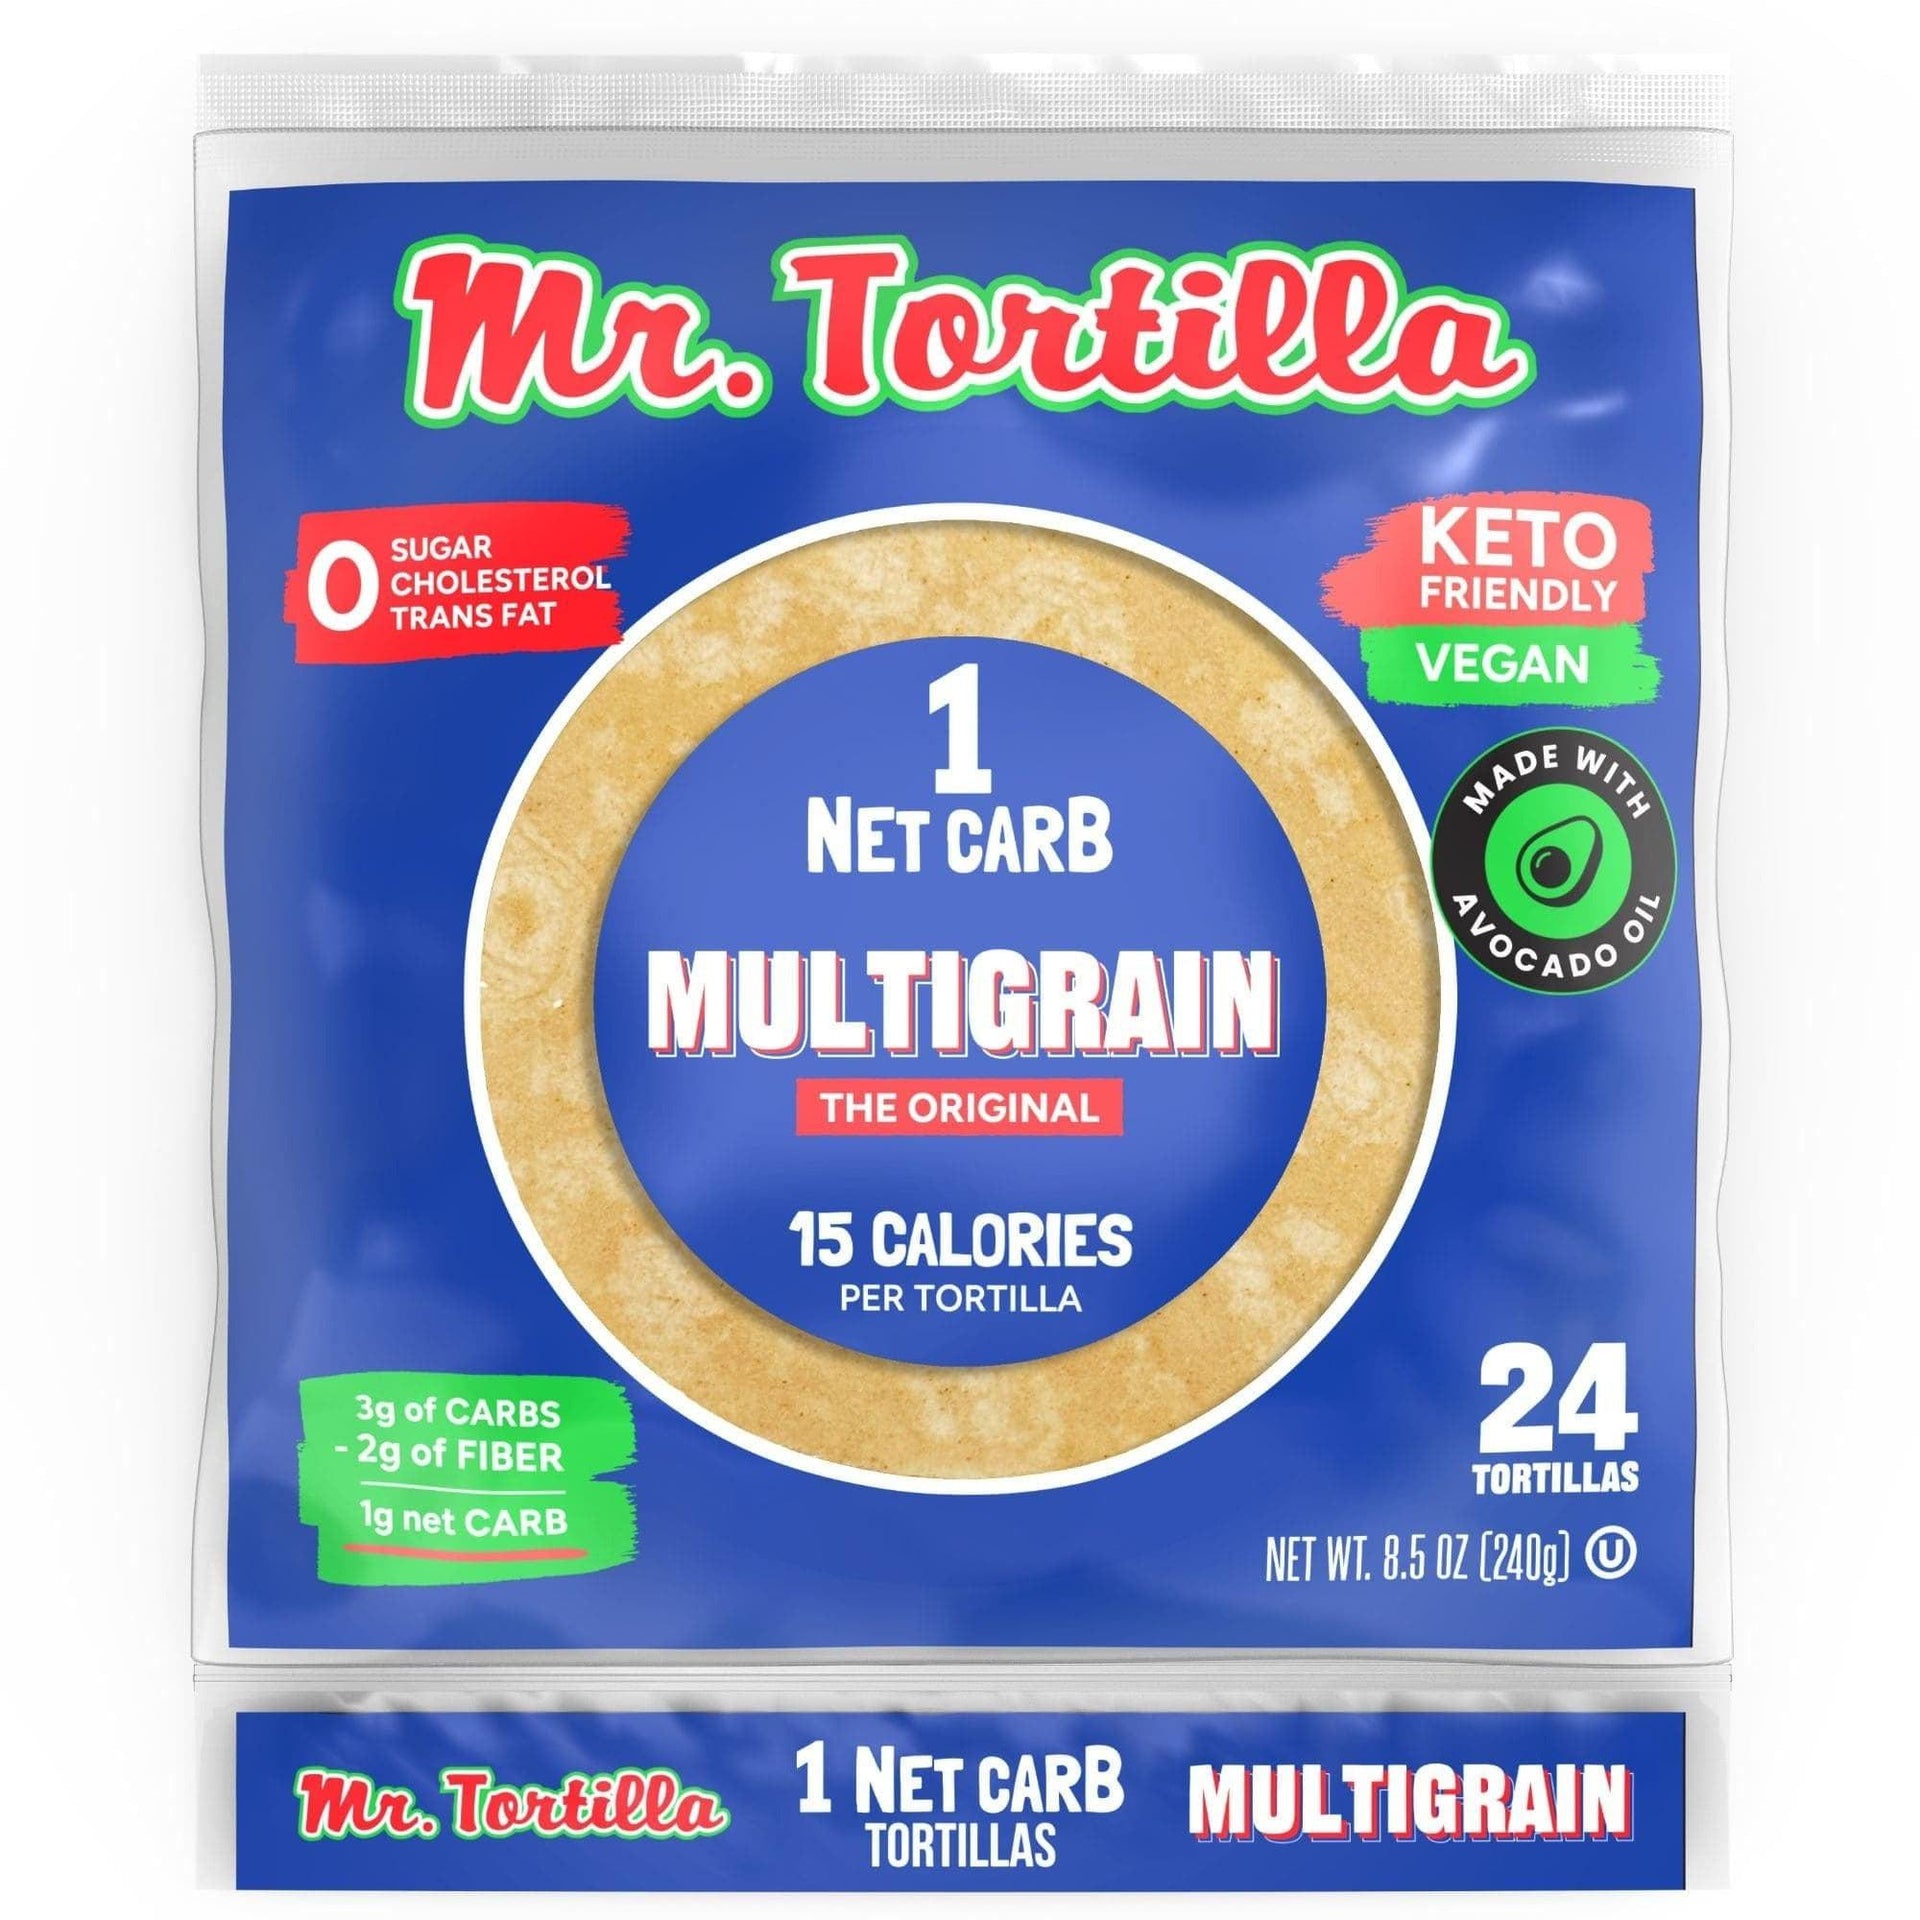 World's only 15 Calorie, 1 Net Carb Tortillas-Mr. Tortilla Store